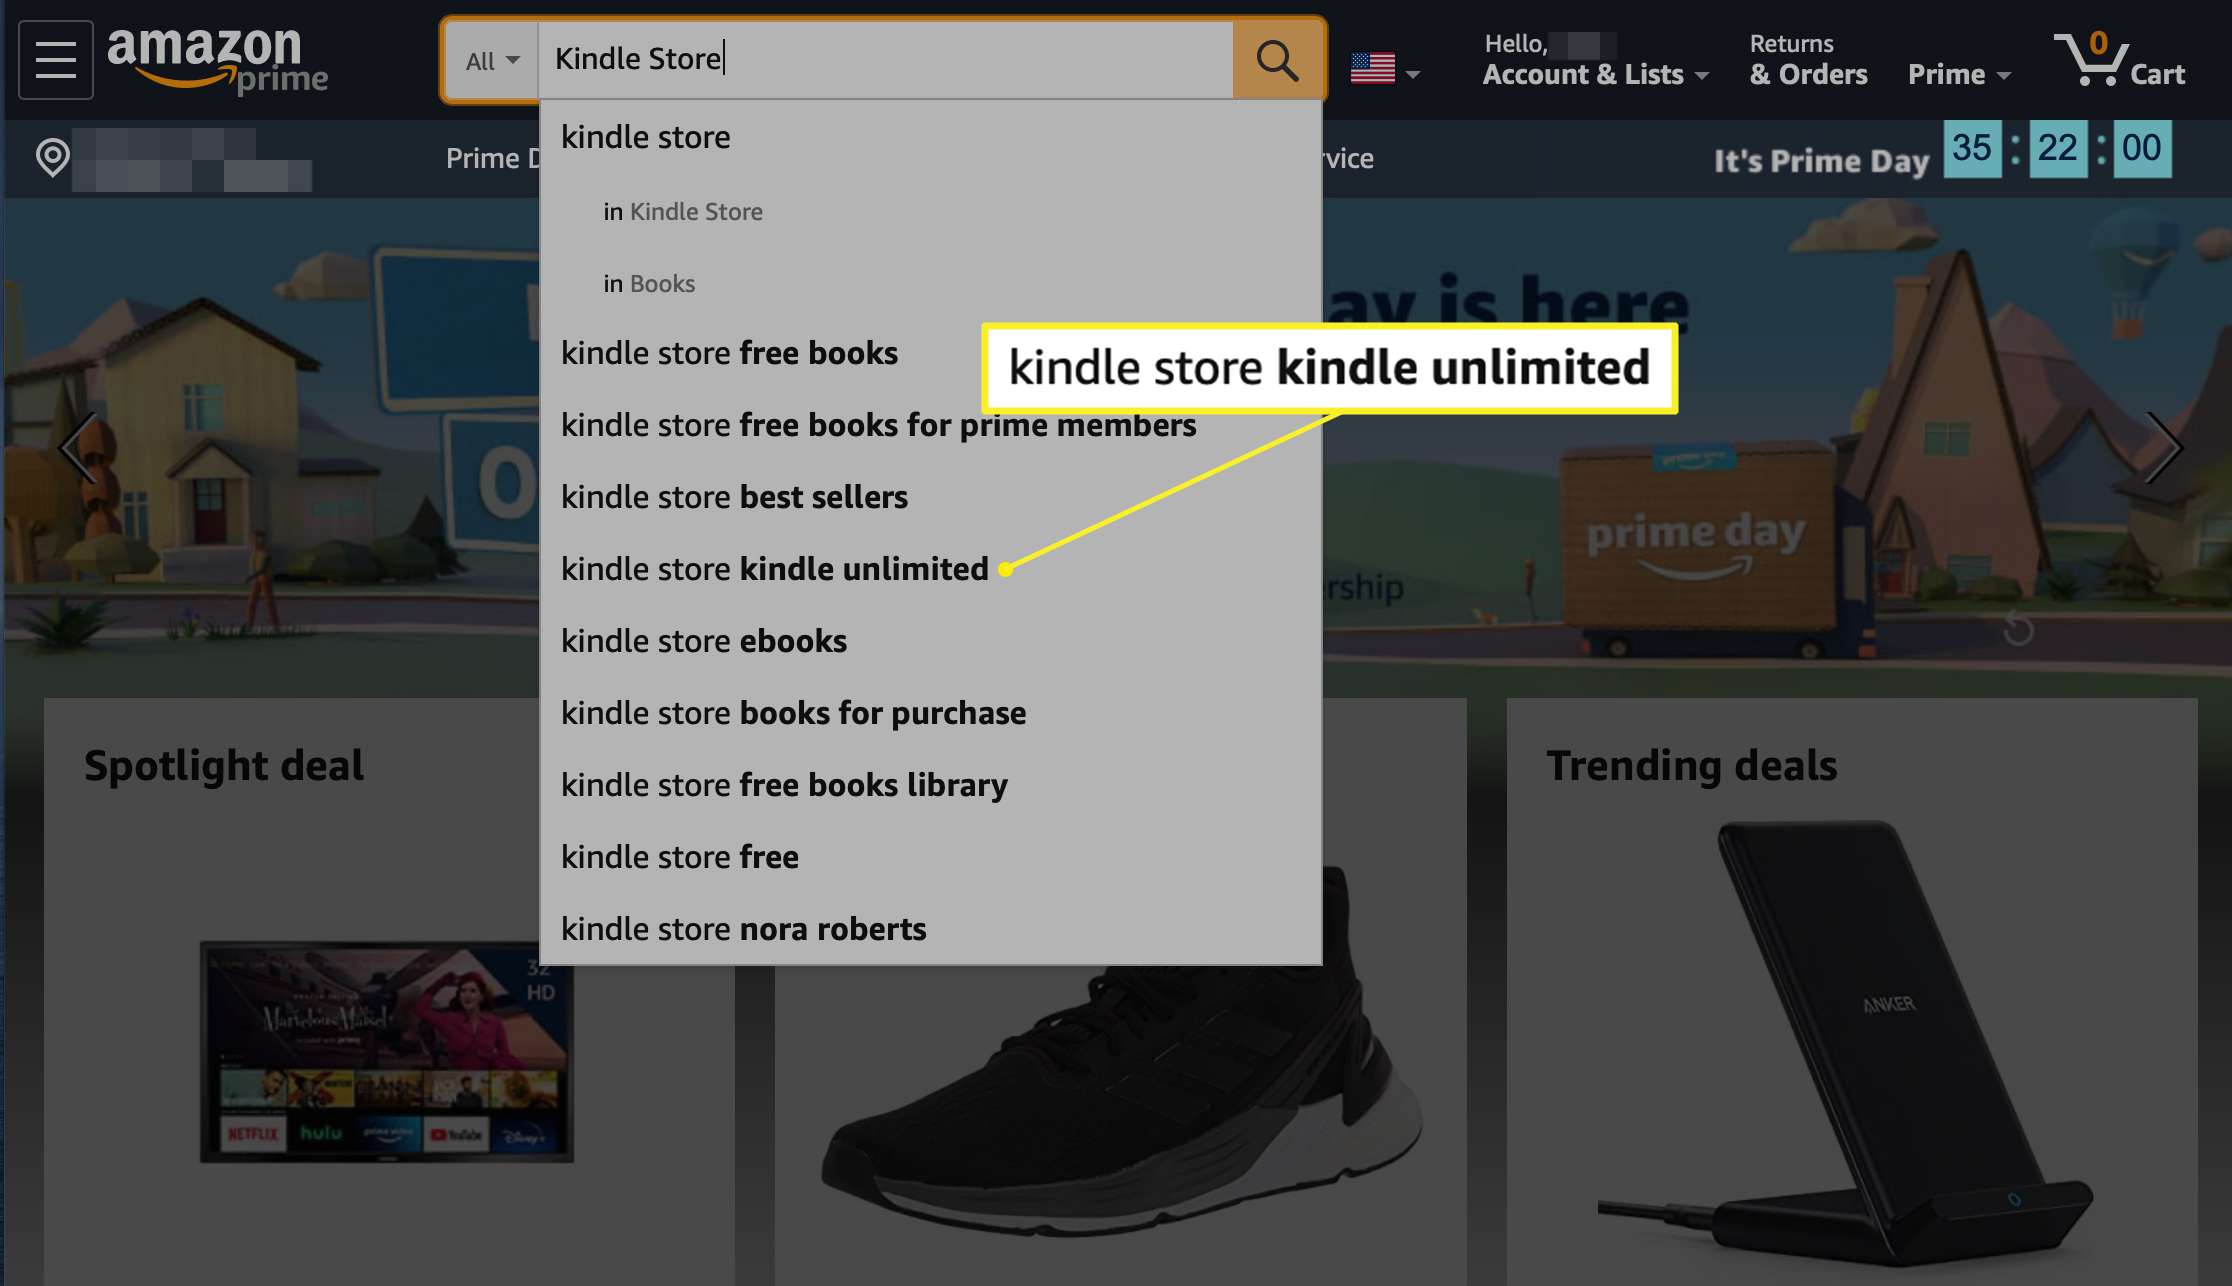 Amazon-sökresultat med Kindle Store Kindle obegränsad markerad